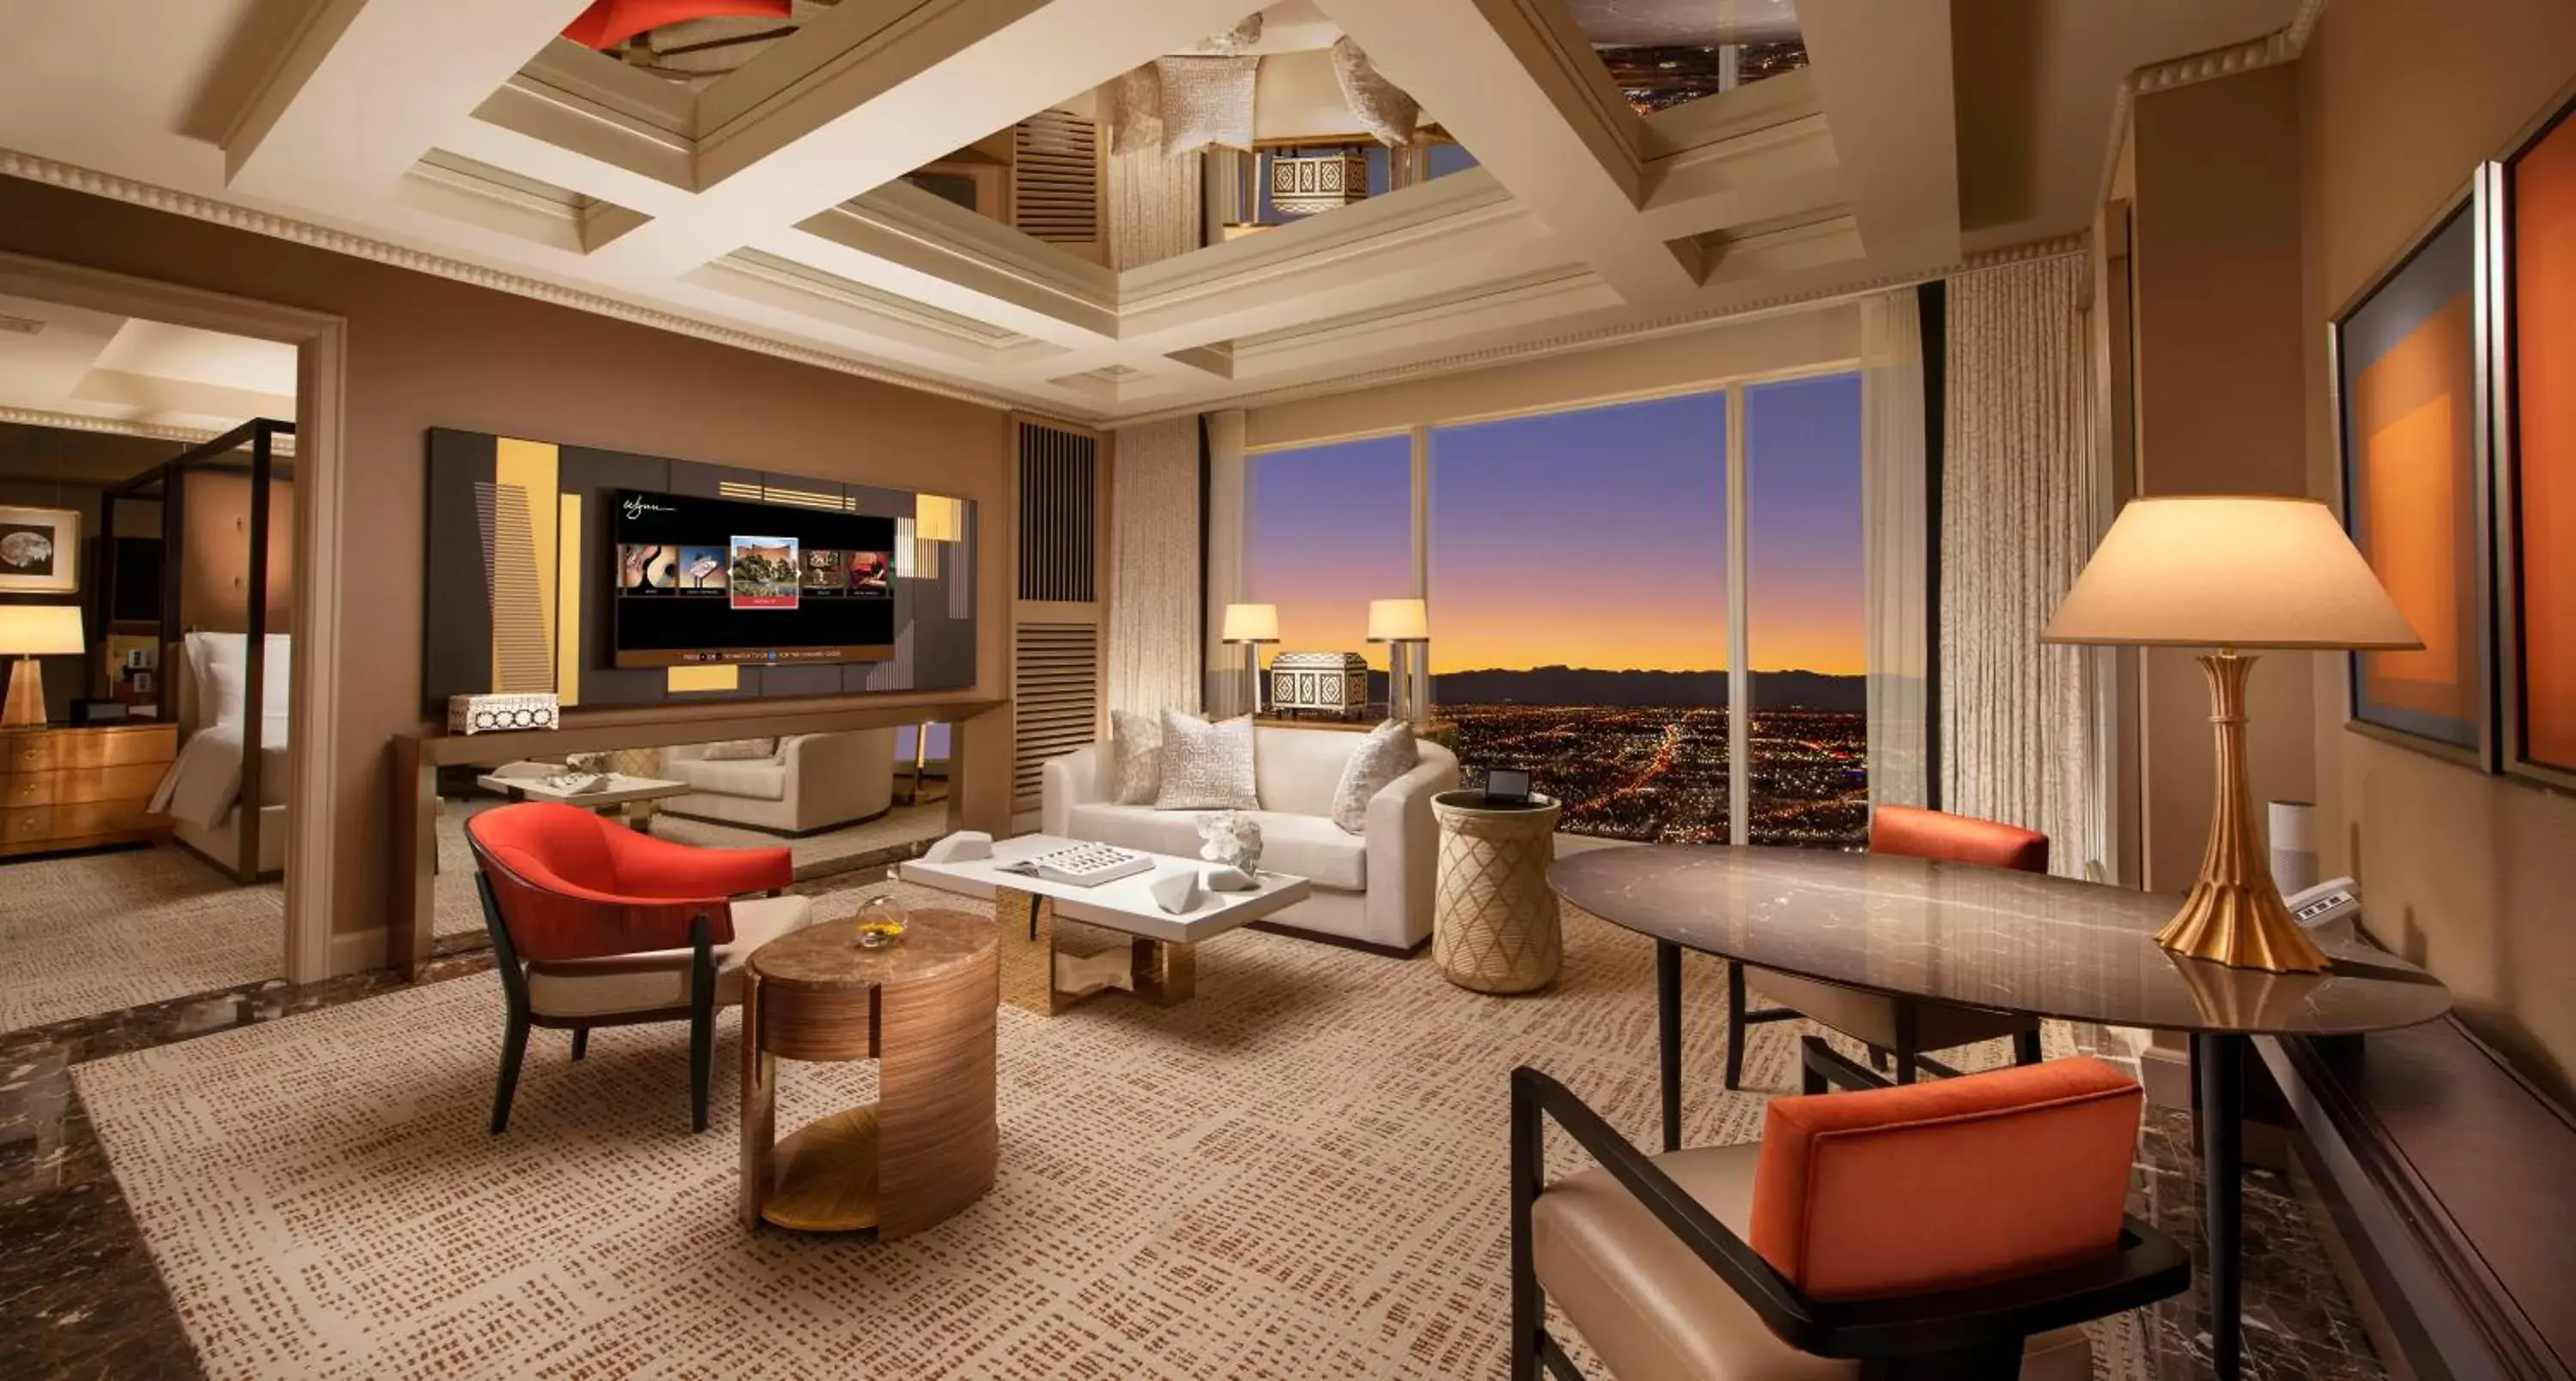 Communal lounge/ TV room in Wynn Las Vegas